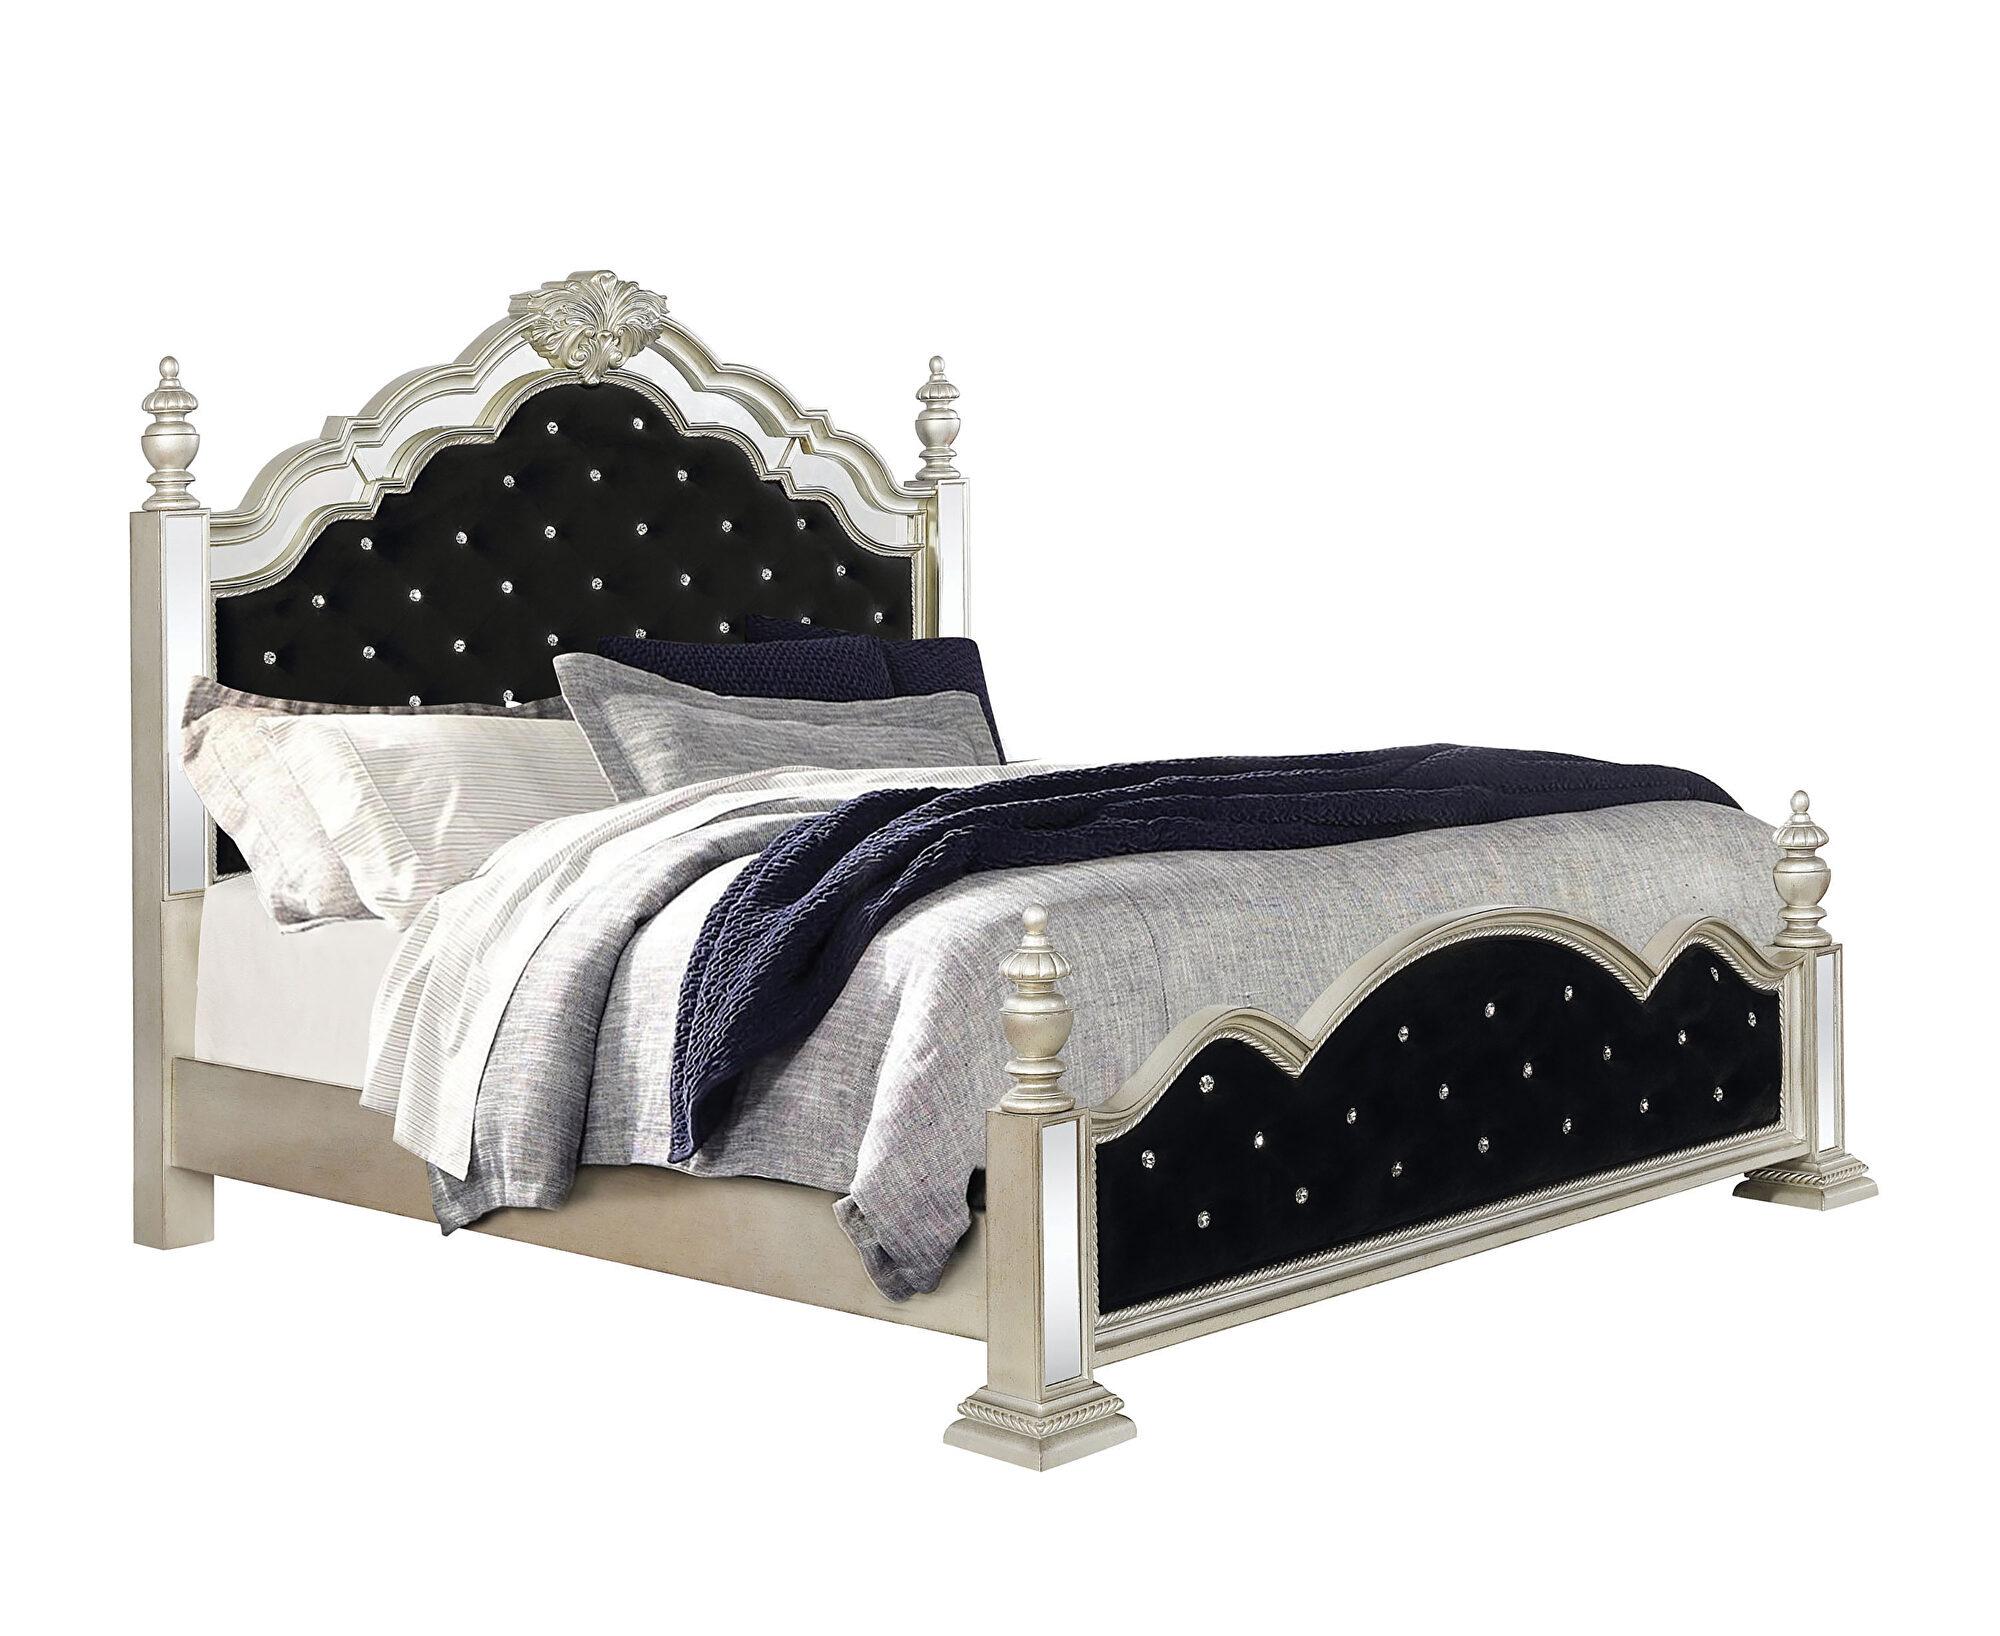 

    
Glam Metallic Platinum Wood Queen Bedroom Set 5pcs Coaster 222731Q Heidi
